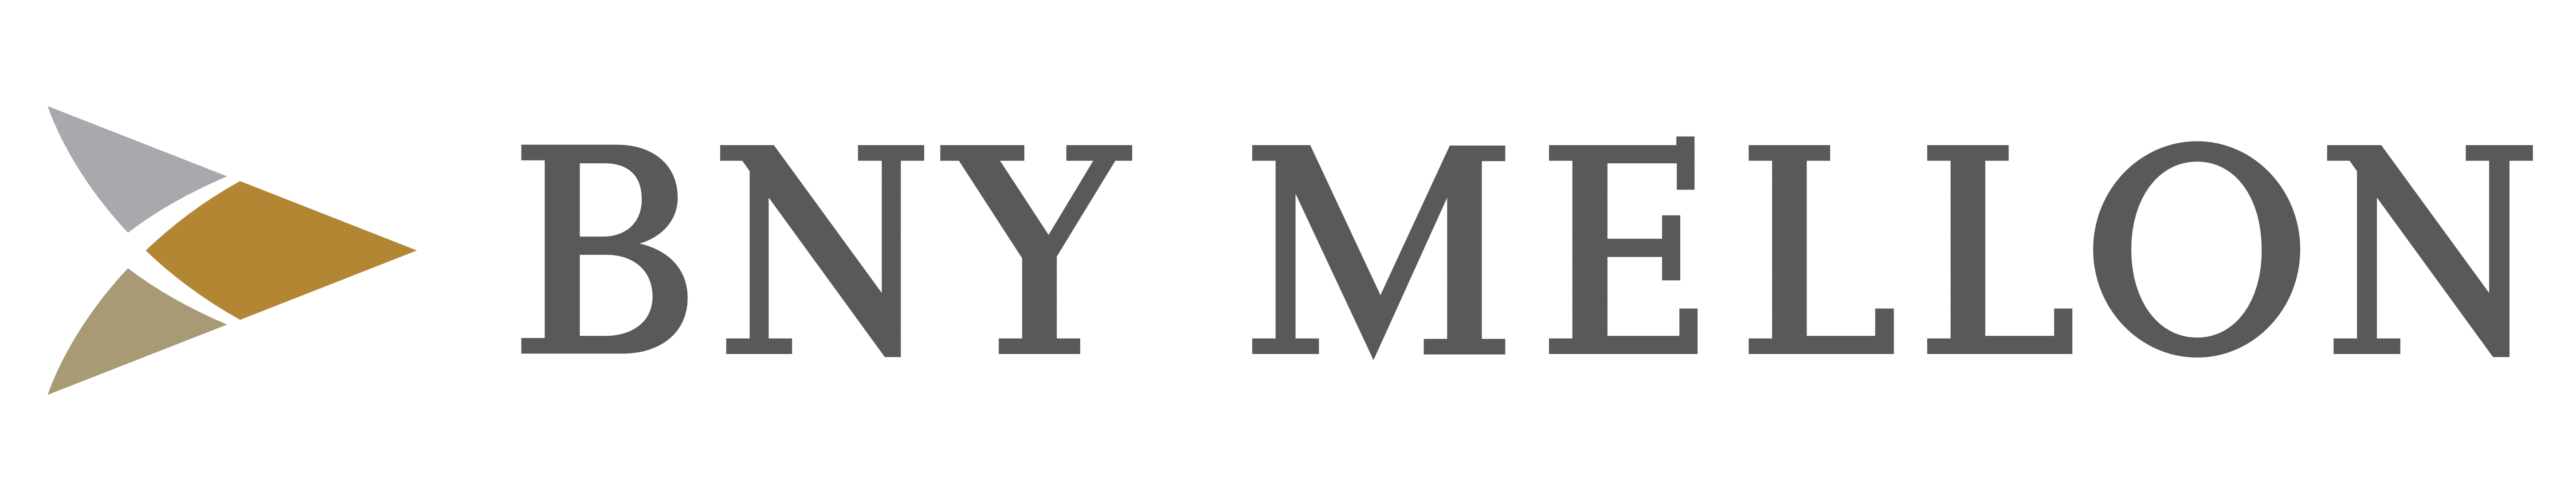 BNY Mellon Bank logo, logotype